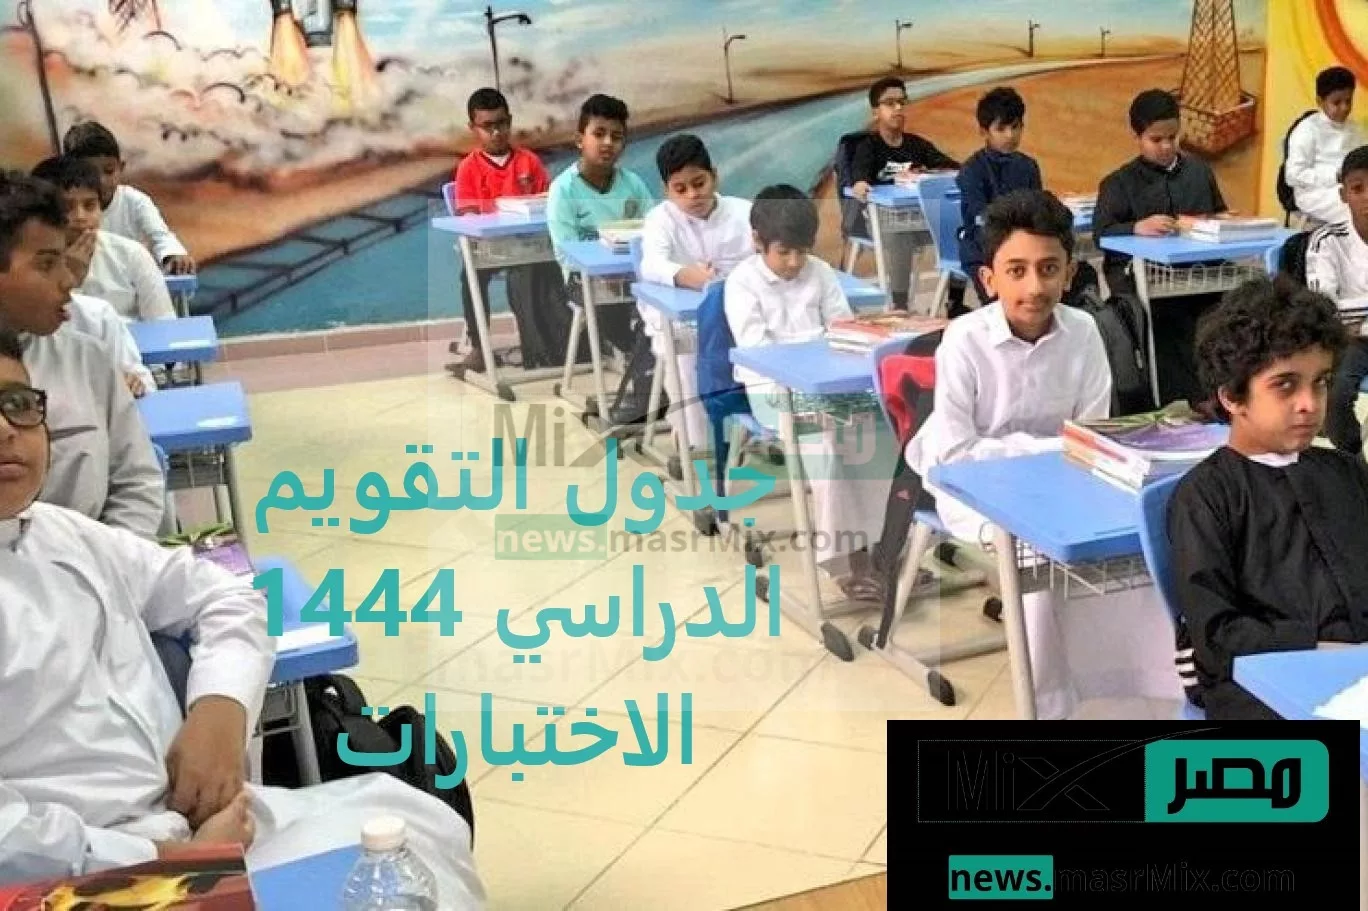 الدراسي 1444 الاختبارات jpg - مدونة التقنية العربية